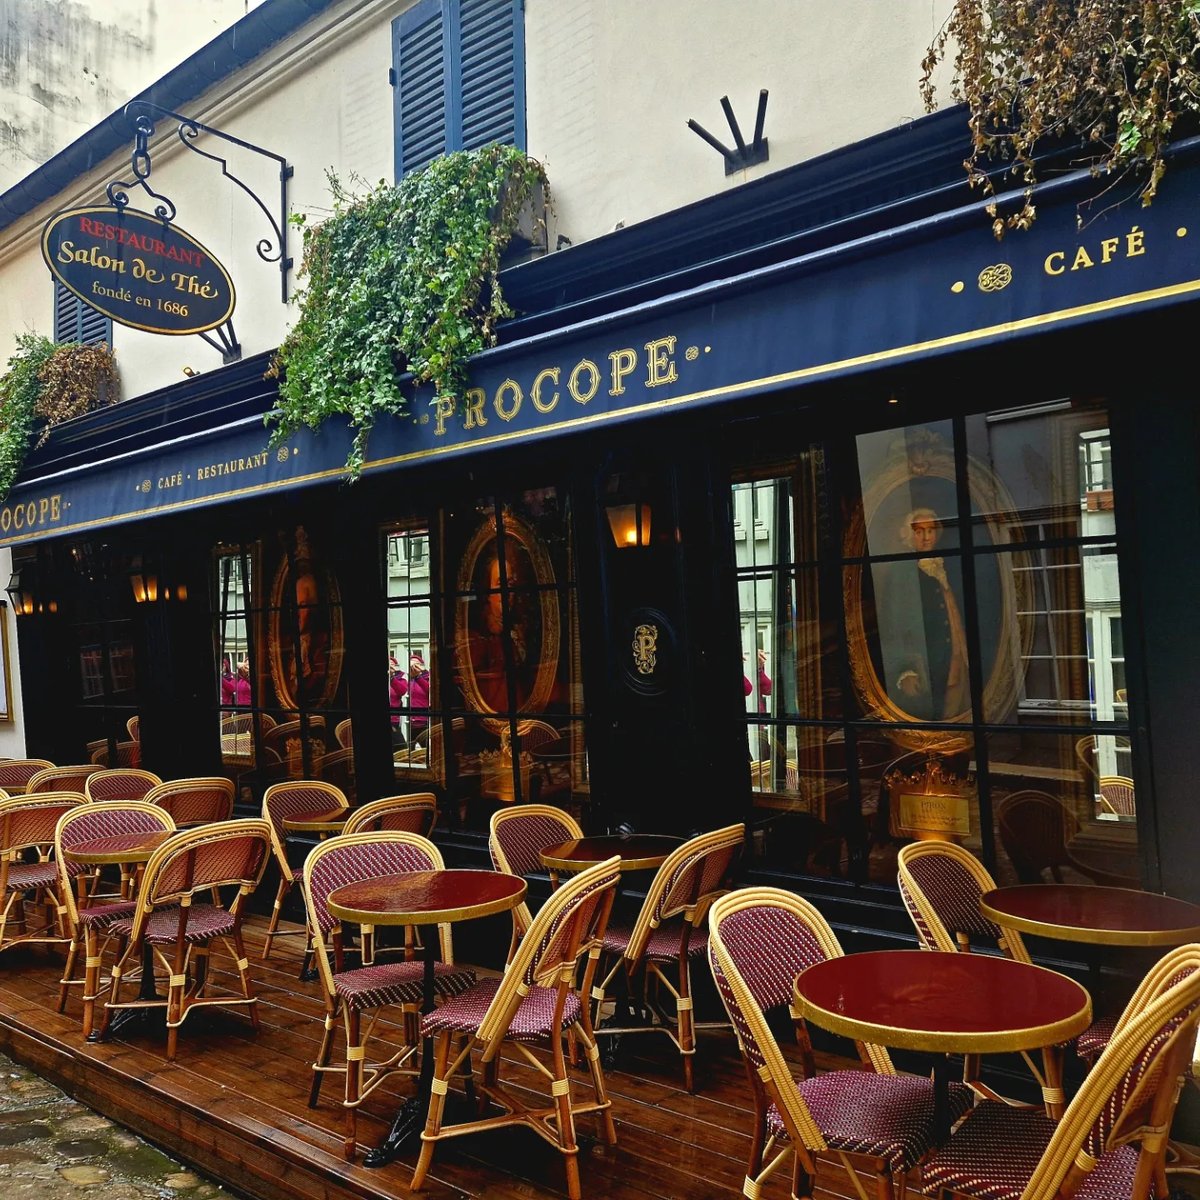 Procope, The oldest restaurant in Paris